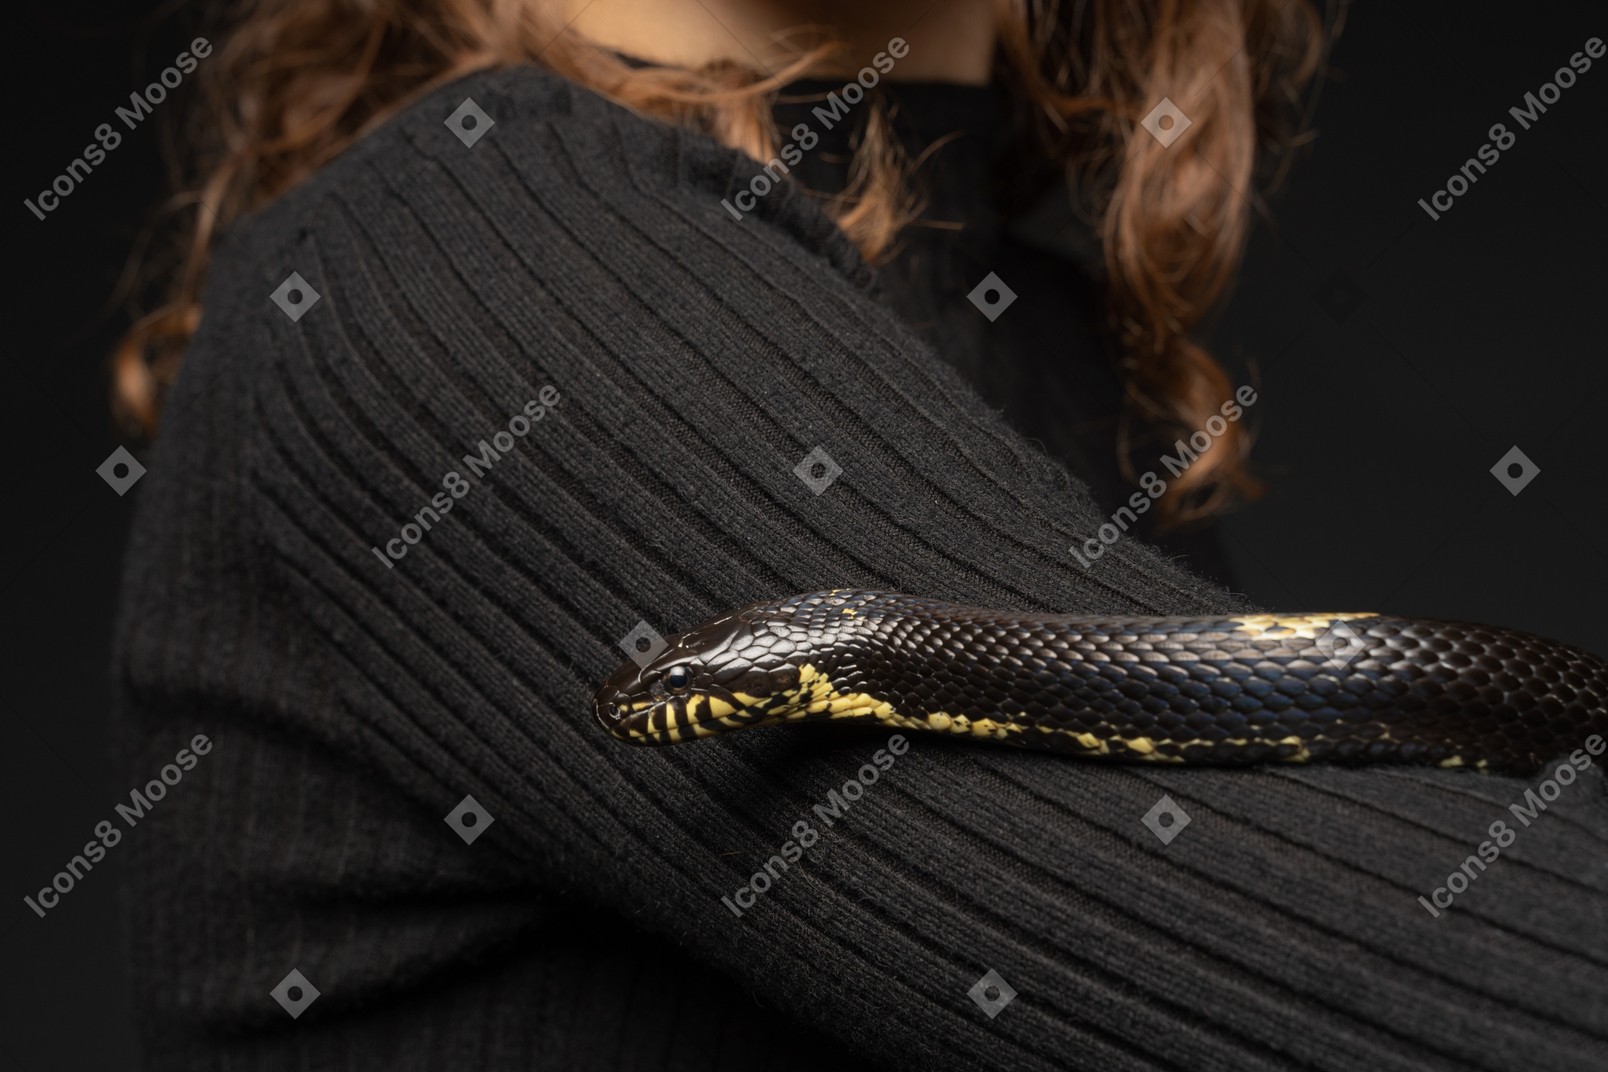 Cobra listrada preta, curvando-se em volta do pescoço do jovem